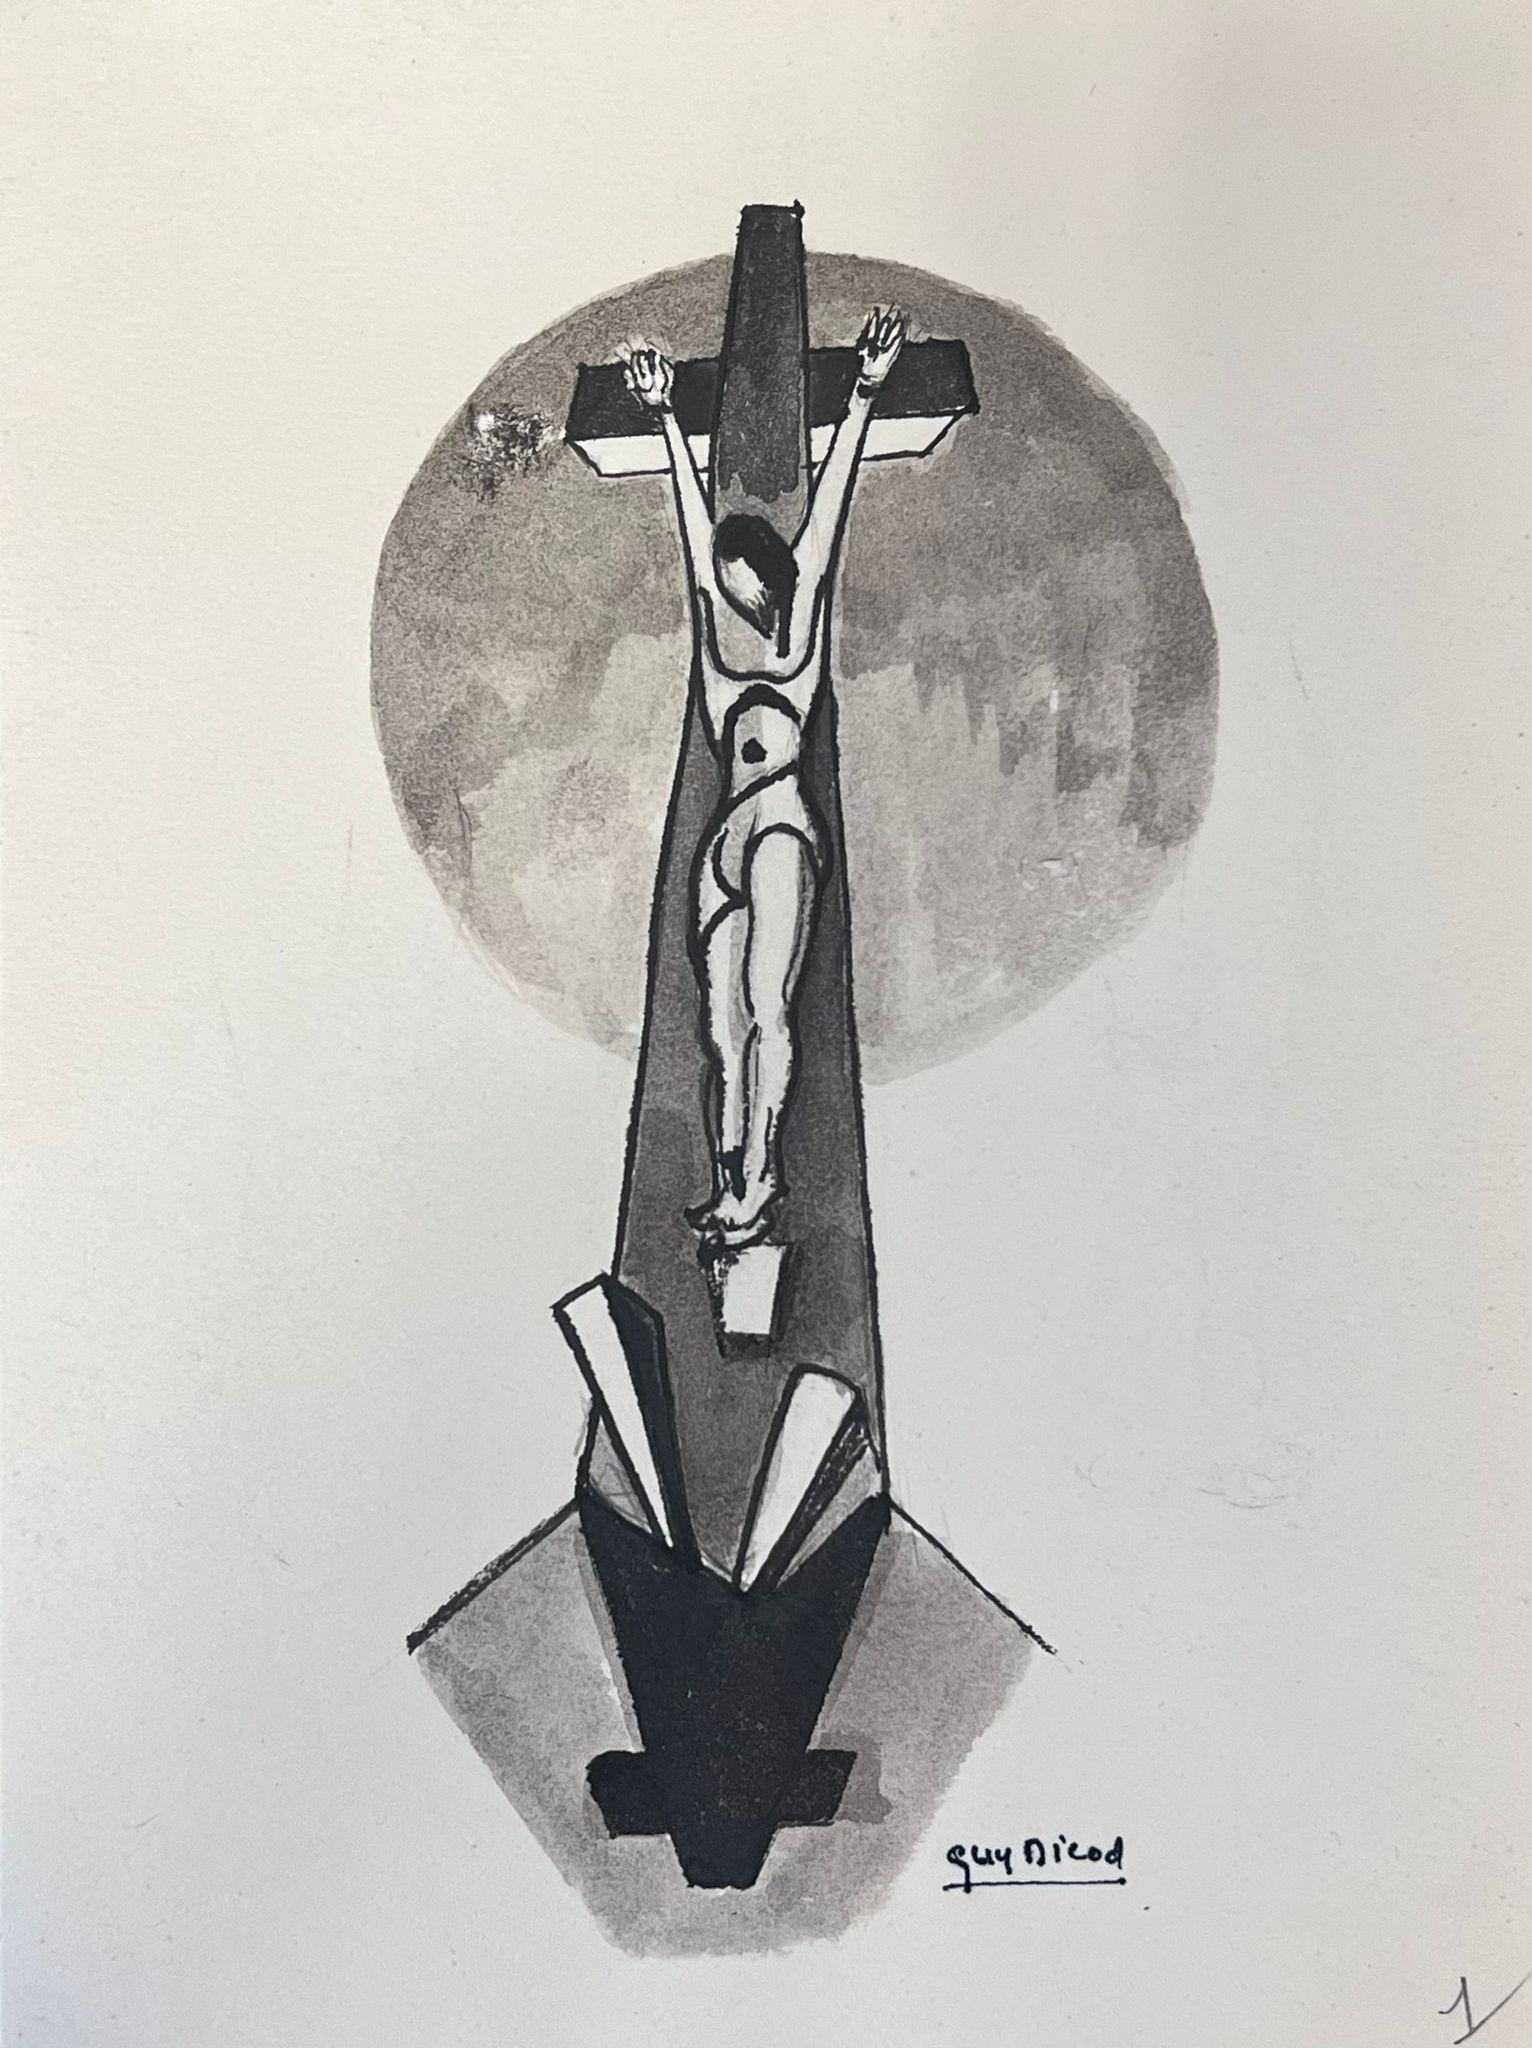 Guy Nicod Figurative Painting – Französisches modernistisches Schwarz-Weiß-Gemälde der Kreuzigung Jesu im 20. Jahrhundert